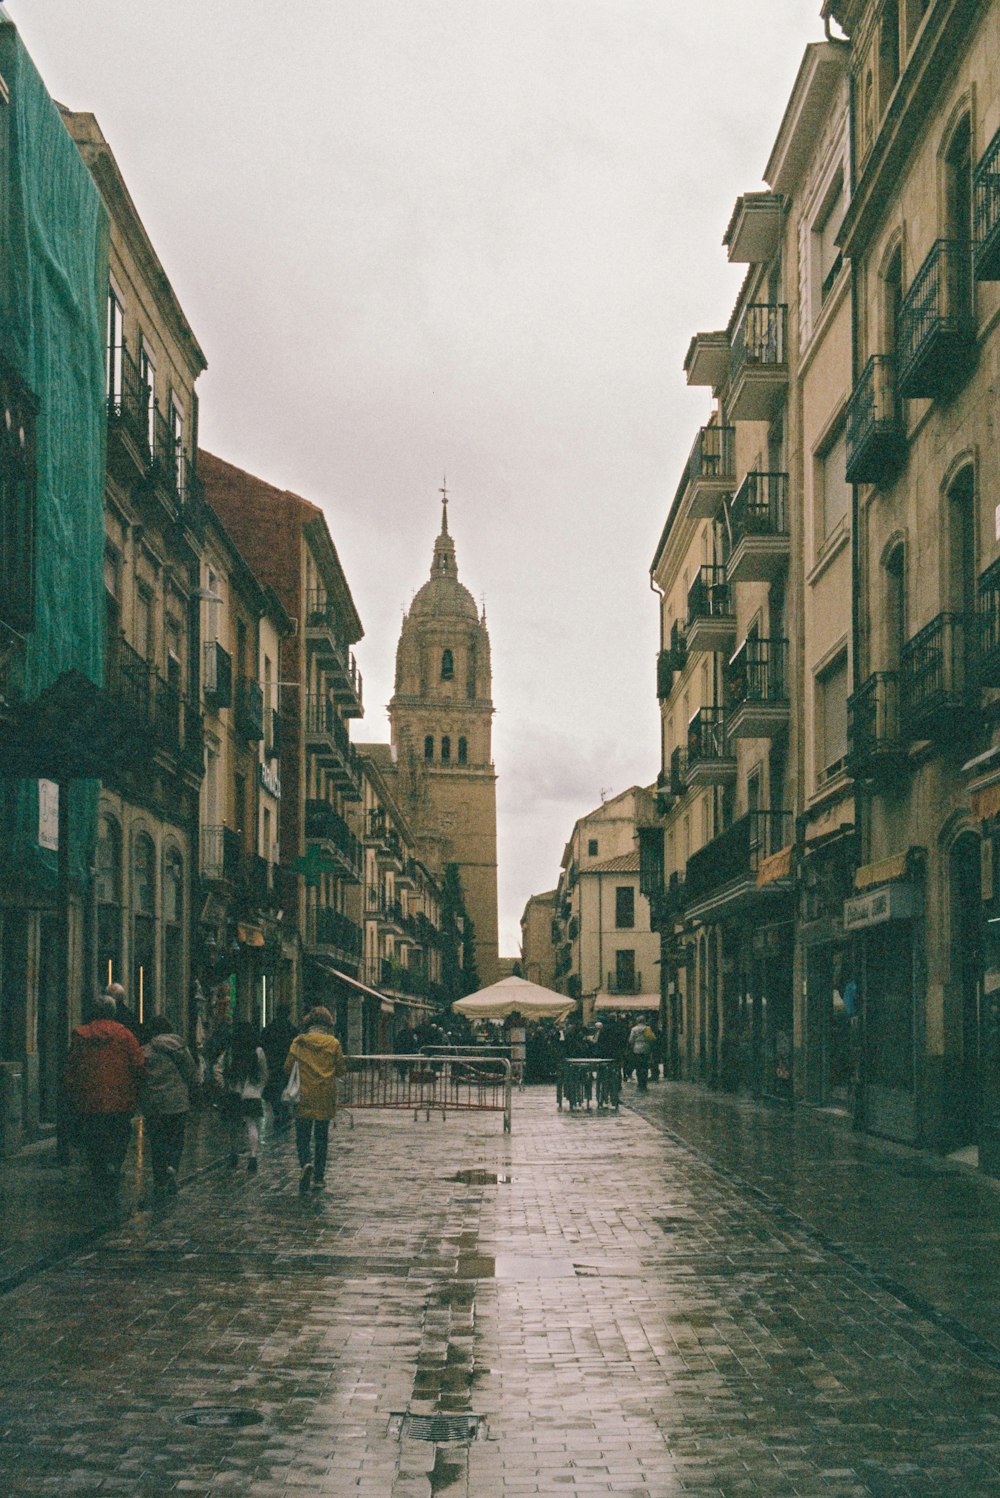 Un jour de pluie dans une ville avec des gens qui marchent dans la rue